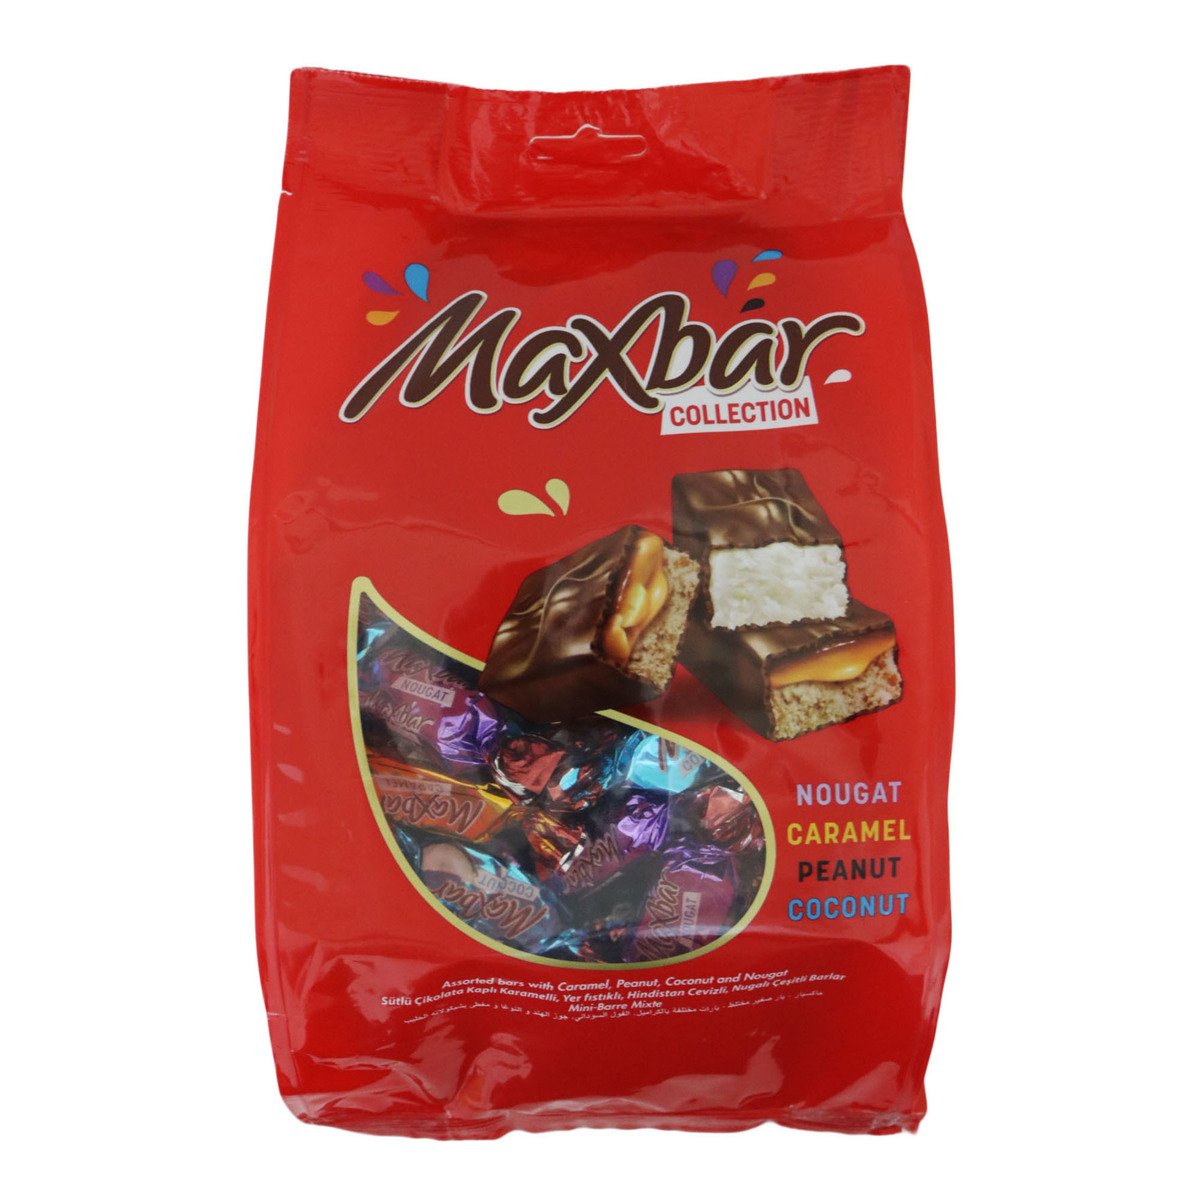 Maxbar Collection Chocolate Bar 430g